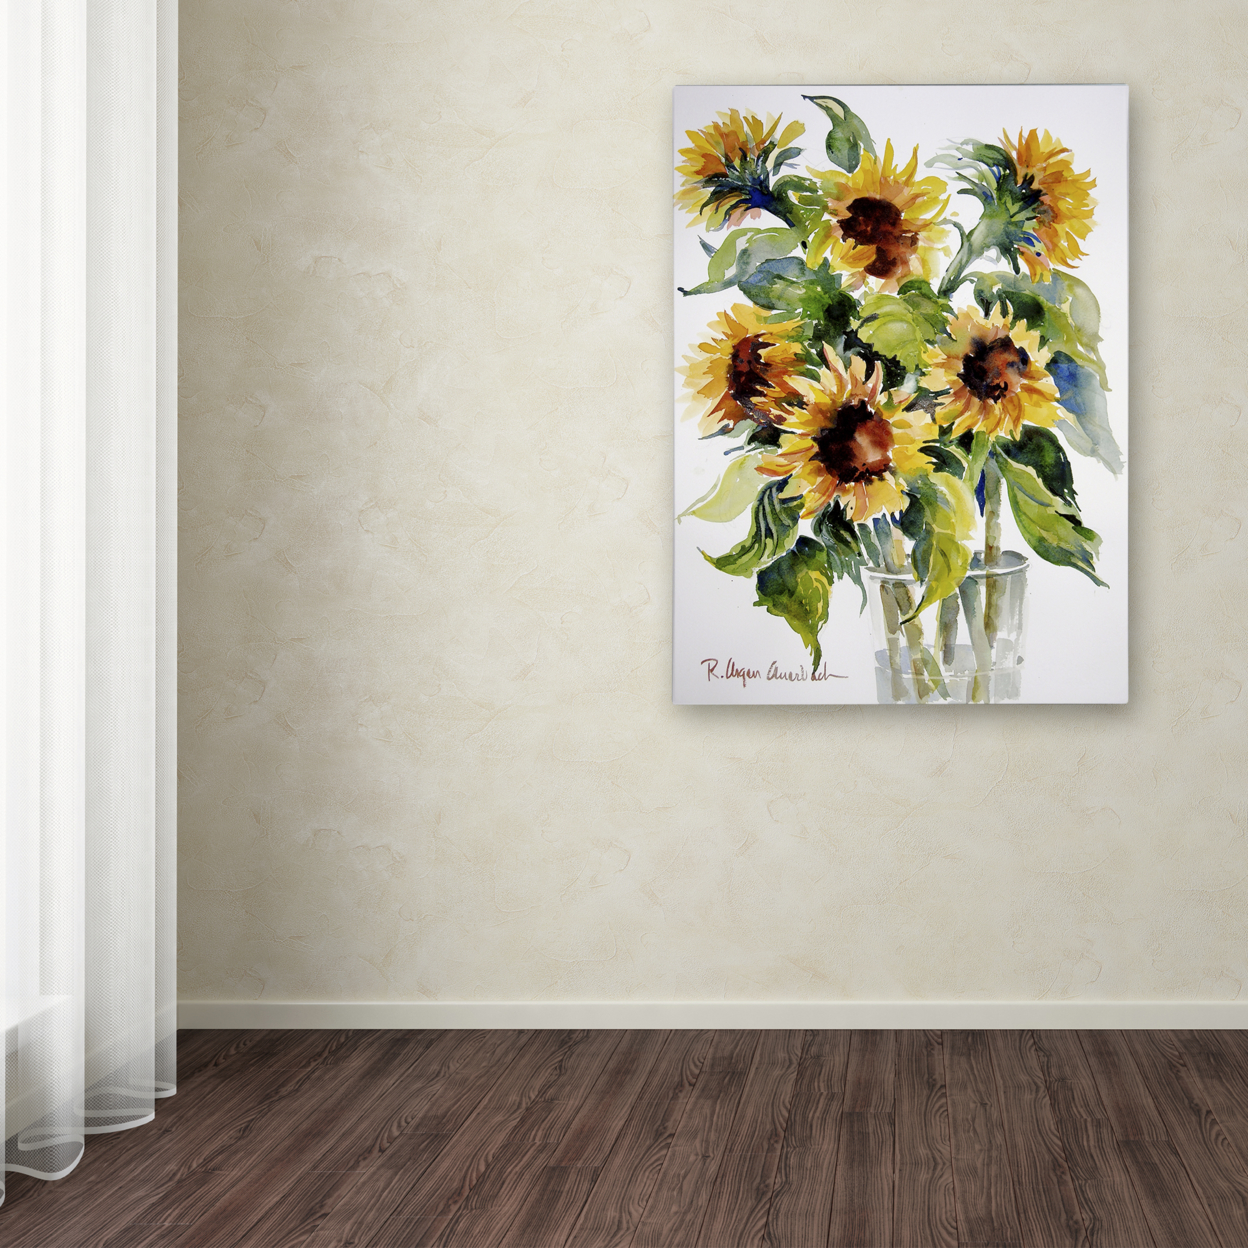 Rita Auerbach 'Sunflowers' Canvas Wall Art 35 X 47 Inches